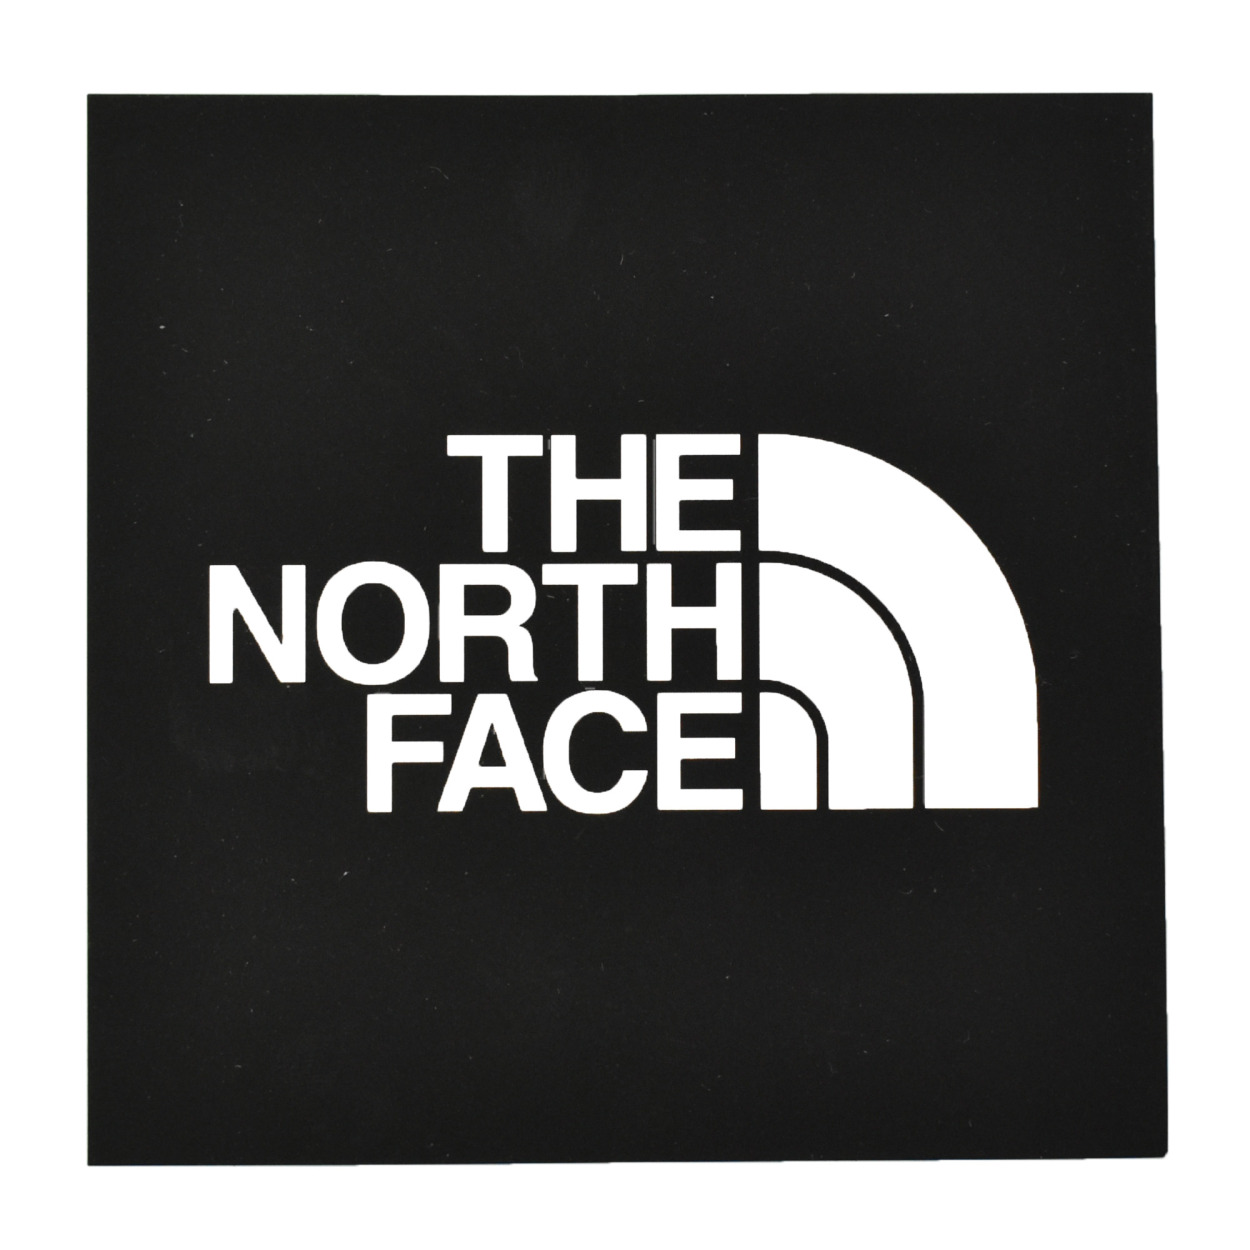 ザ ノースフェイス ステッカー Tnf スクエアロゴステッカー The North Face Nn314 ブラック 黒 レッド 赤 雑貨 おしゃれ ロゴ 7450 0004 サンダル スニーカーならz Craft 通販 Yahoo ショッピング